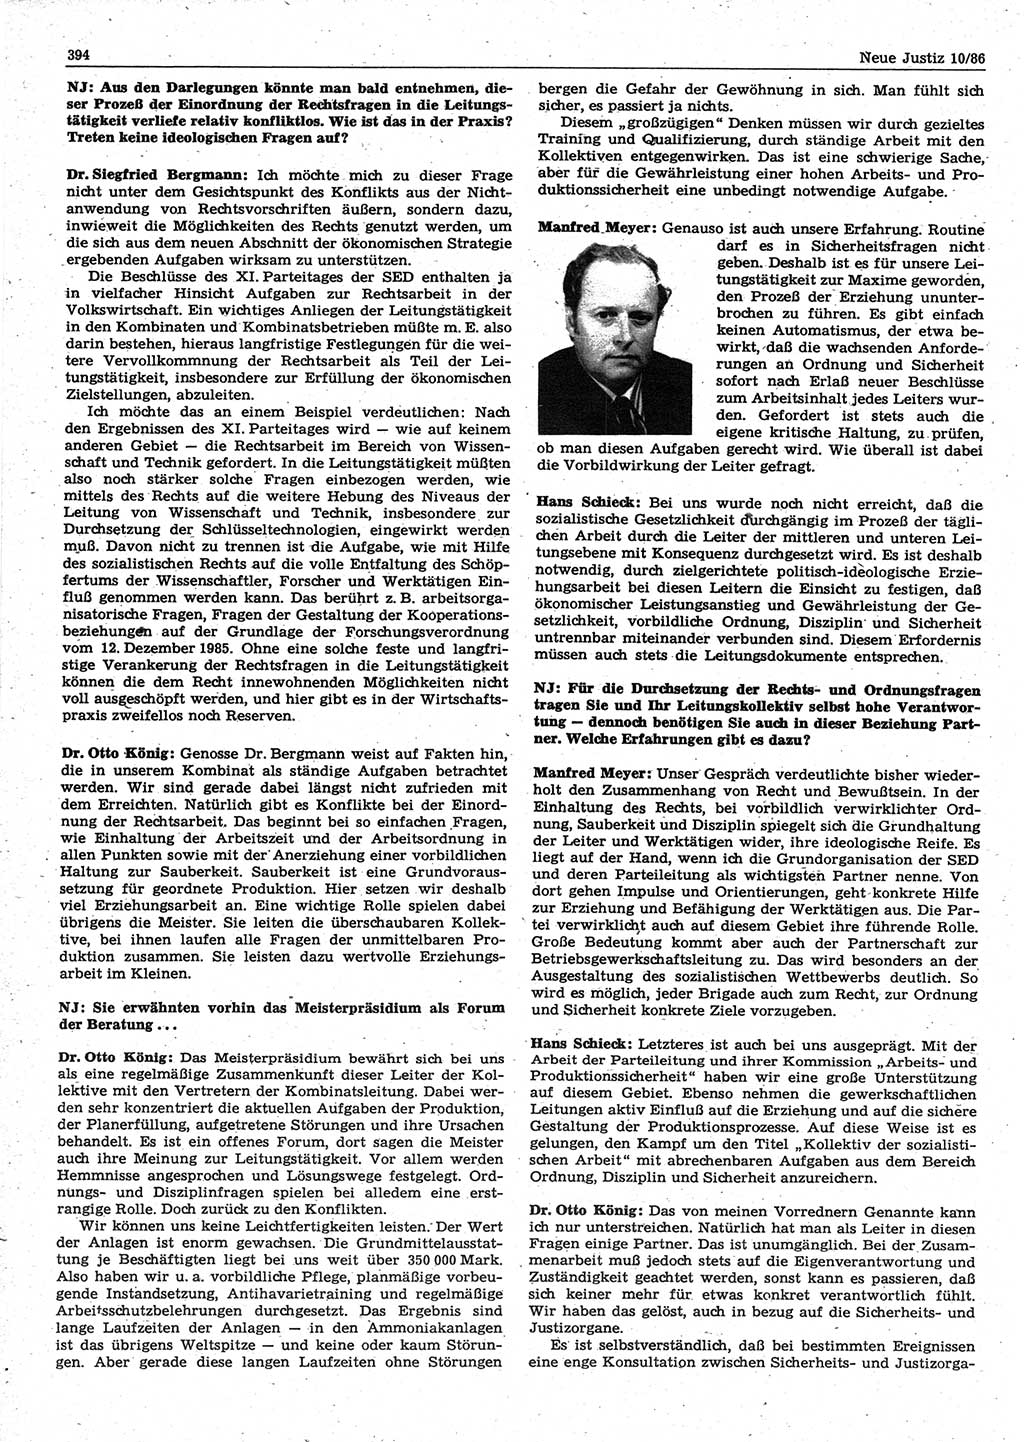 Neue Justiz (NJ), Zeitschrift für sozialistisches Recht und Gesetzlichkeit [Deutsche Demokratische Republik (DDR)], 40. Jahrgang 1986, Seite 394 (NJ DDR 1986, S. 394)